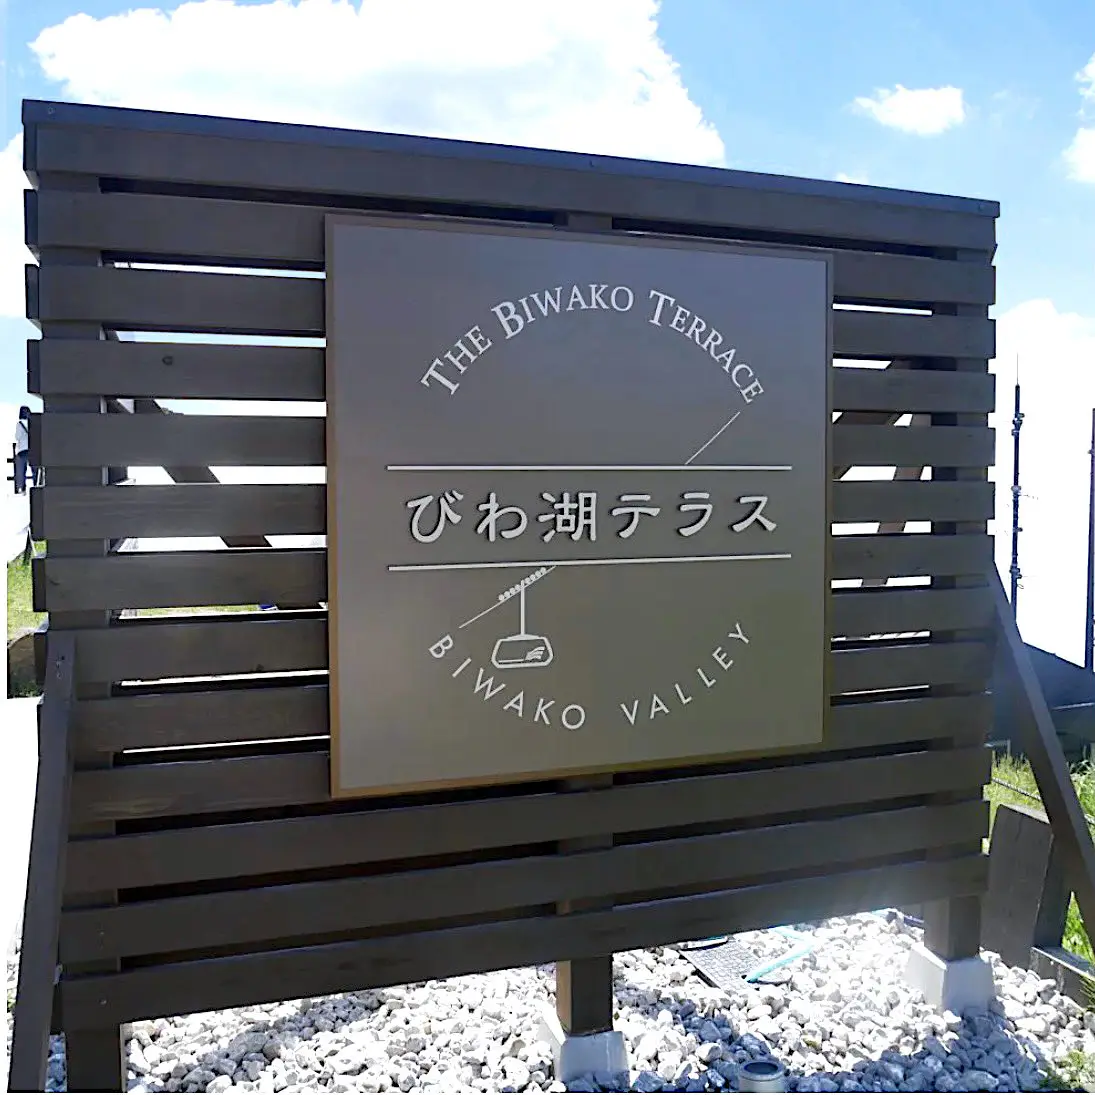 「びわ湖バレイ」は、琵琶湖畔の標高約1,100mの山の上にあります。